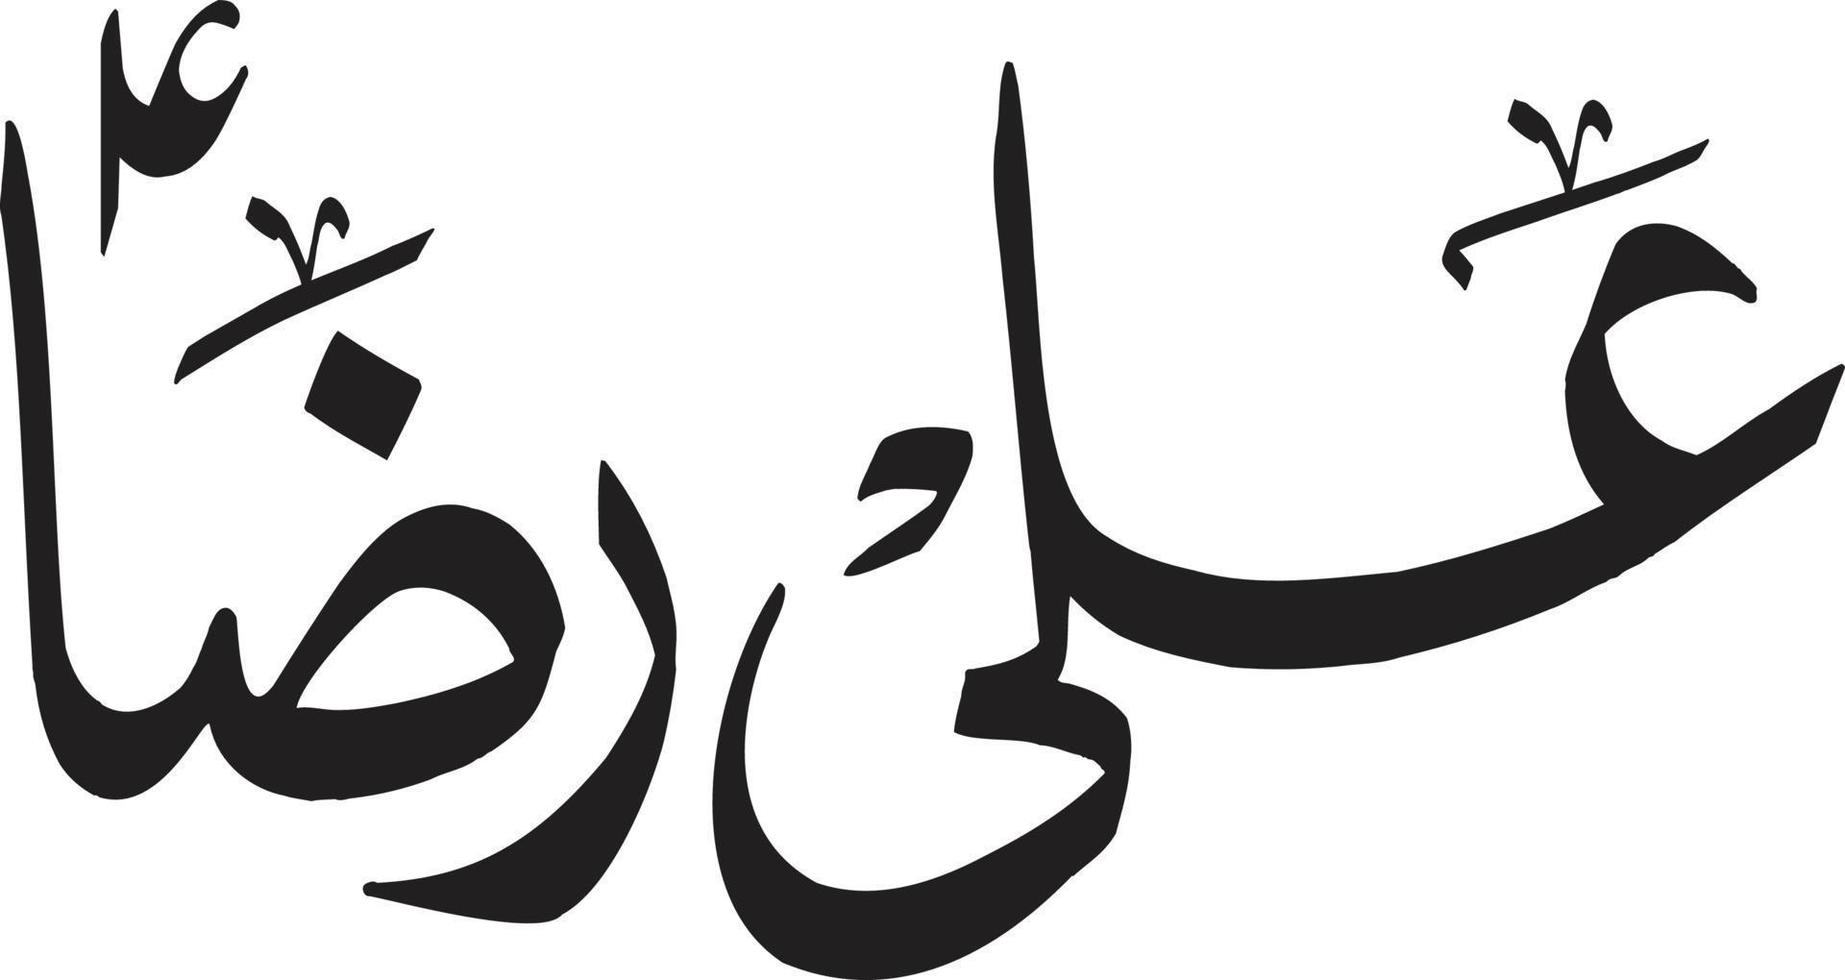 ali raza título islámico urdu árabe caligrafía vector libre